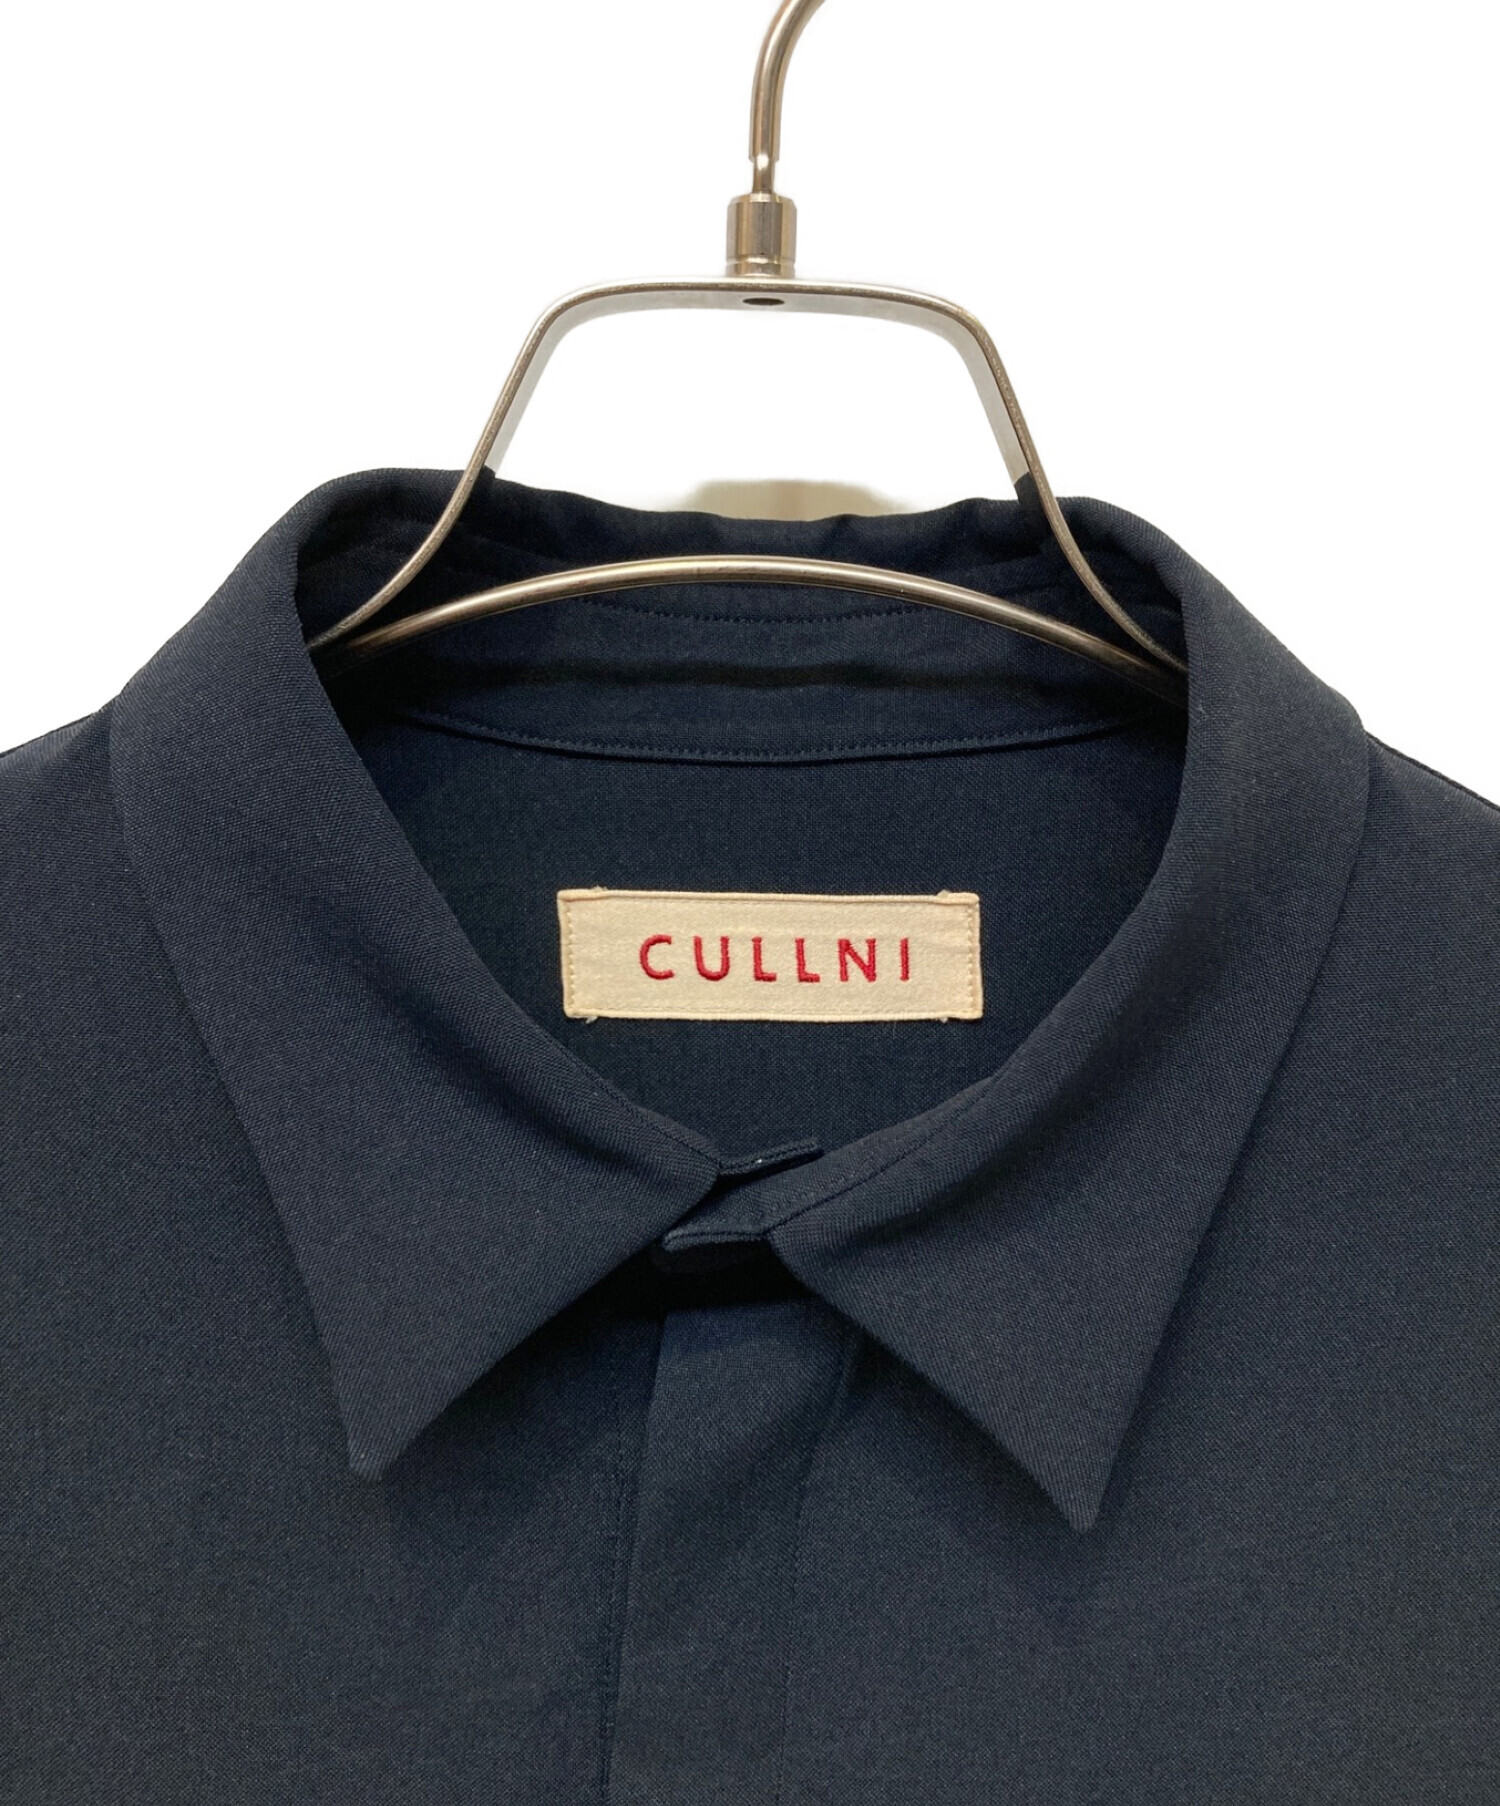 中古・古着通販】CULLNI (クルニ) リボンタイシャツ ネイビー サイズ:1